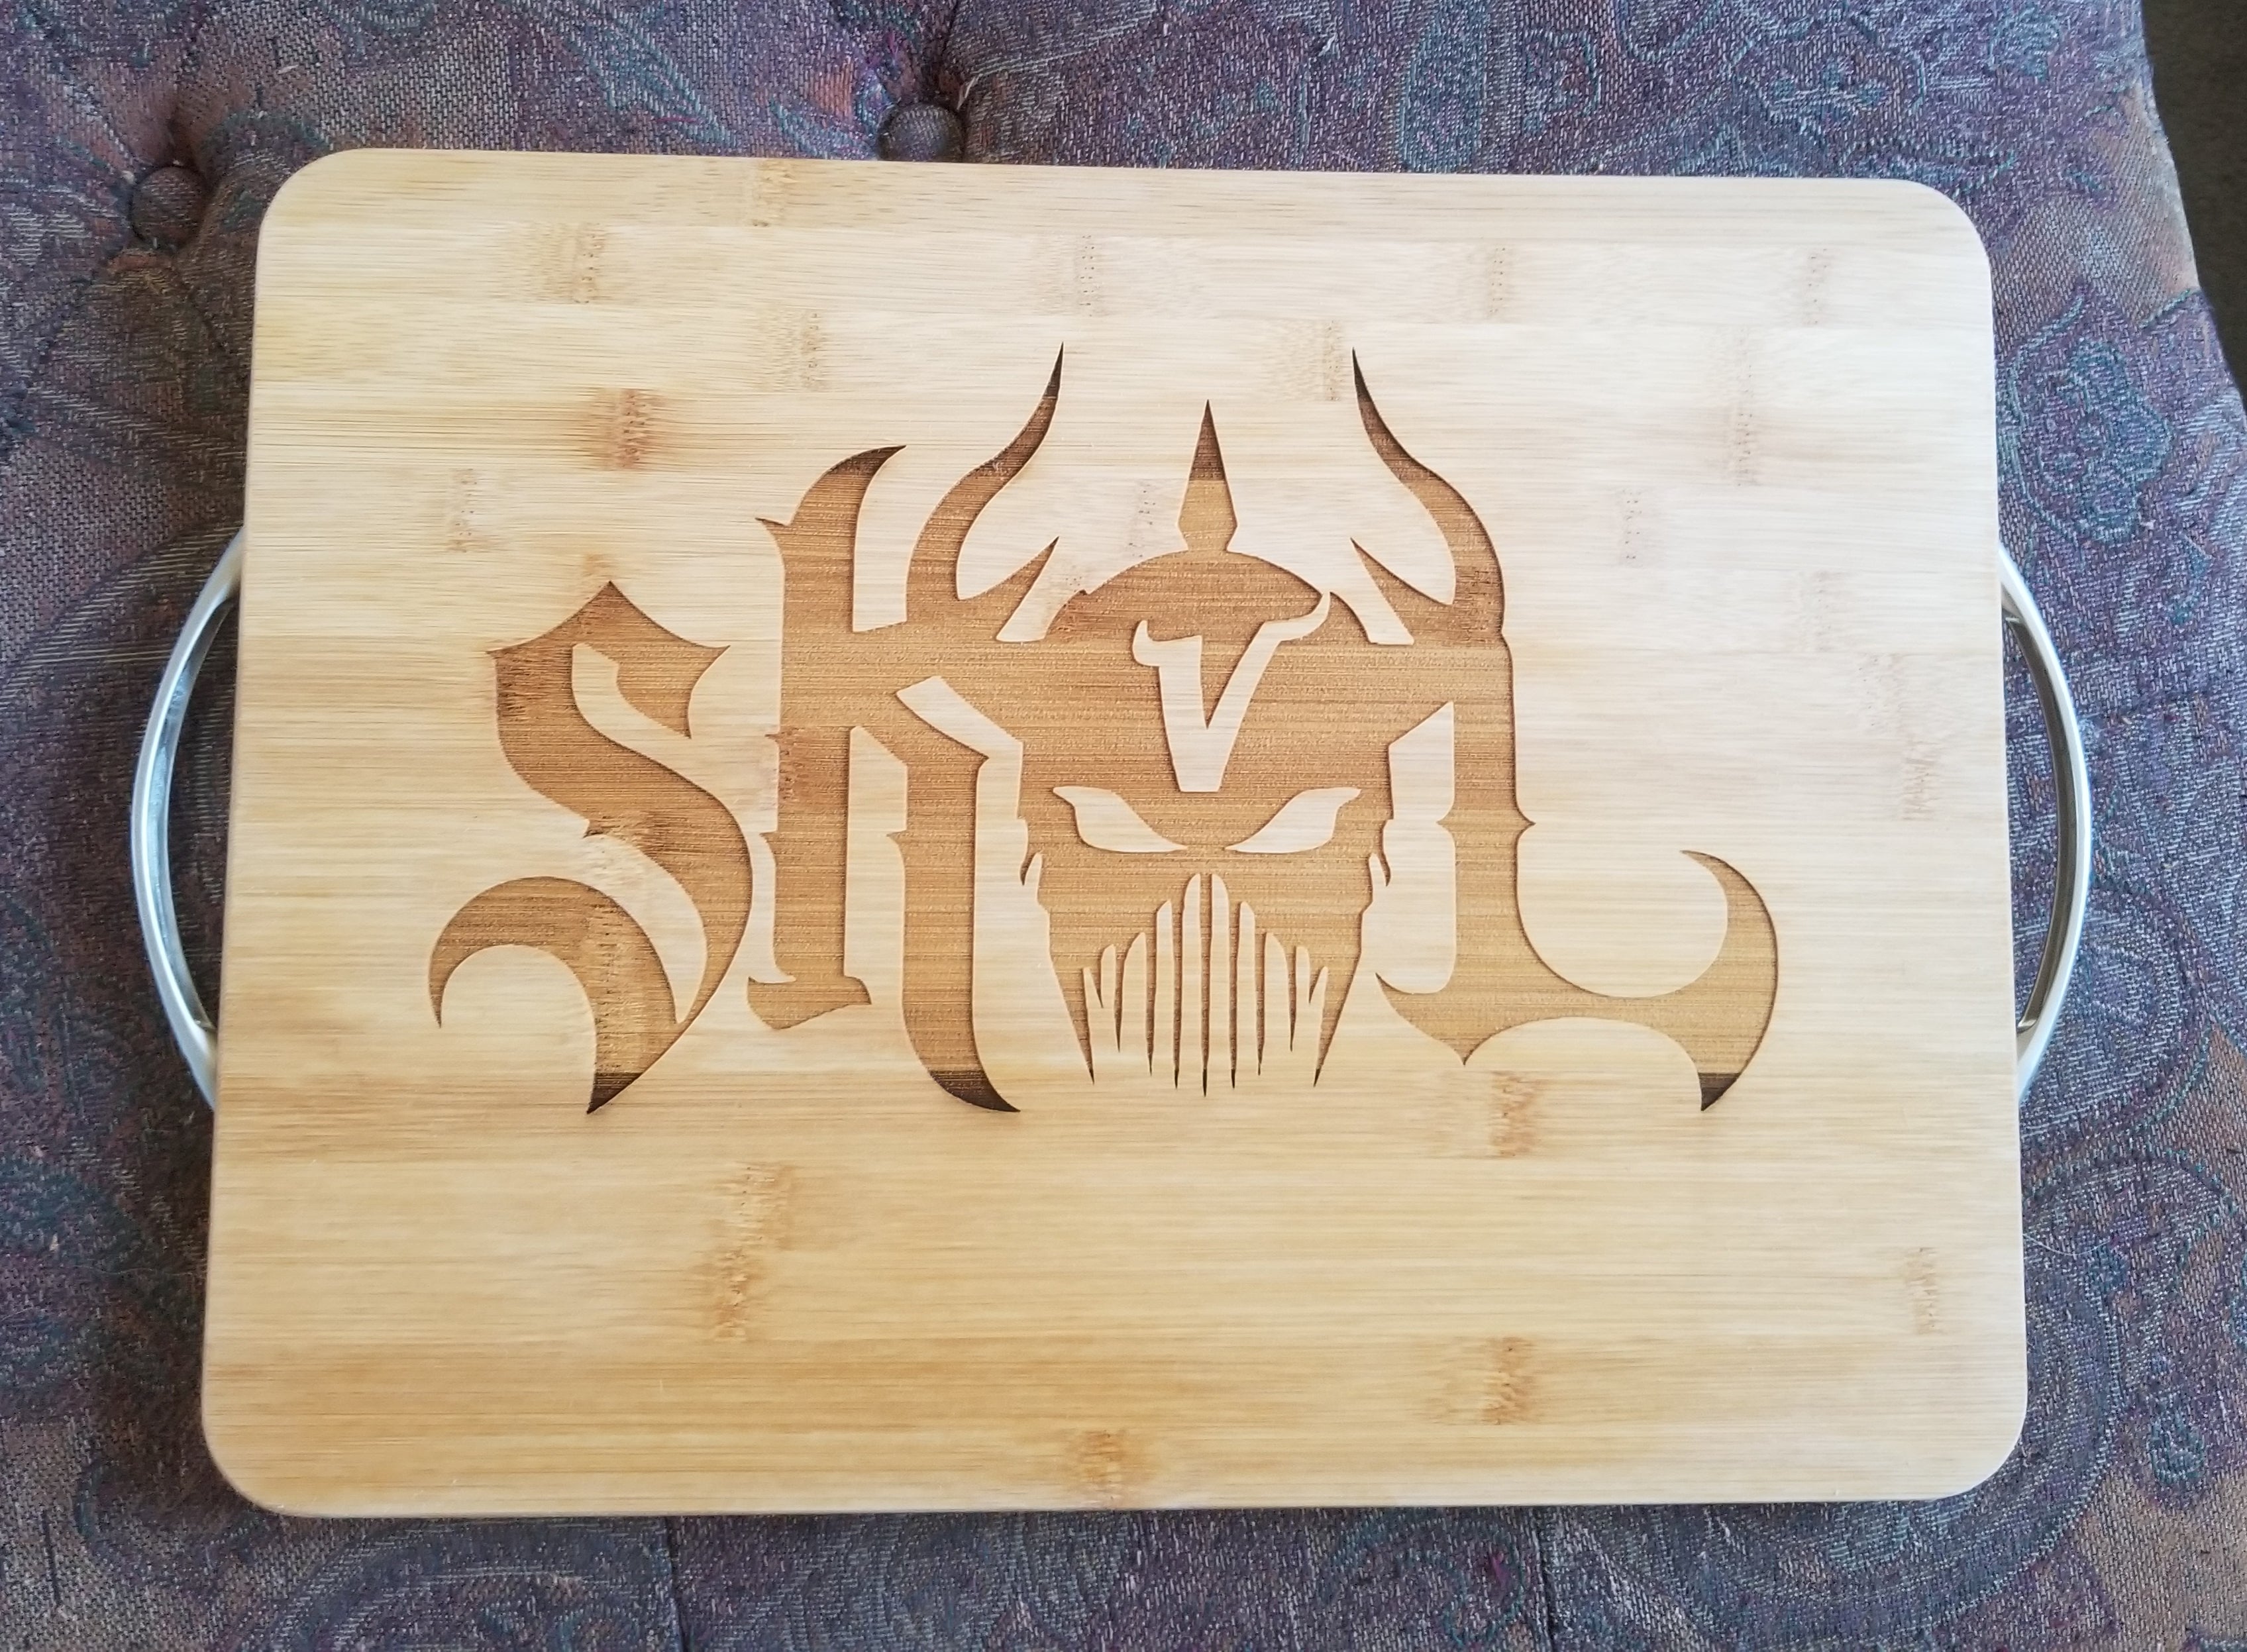 SKOL cutting board (12 x 18)